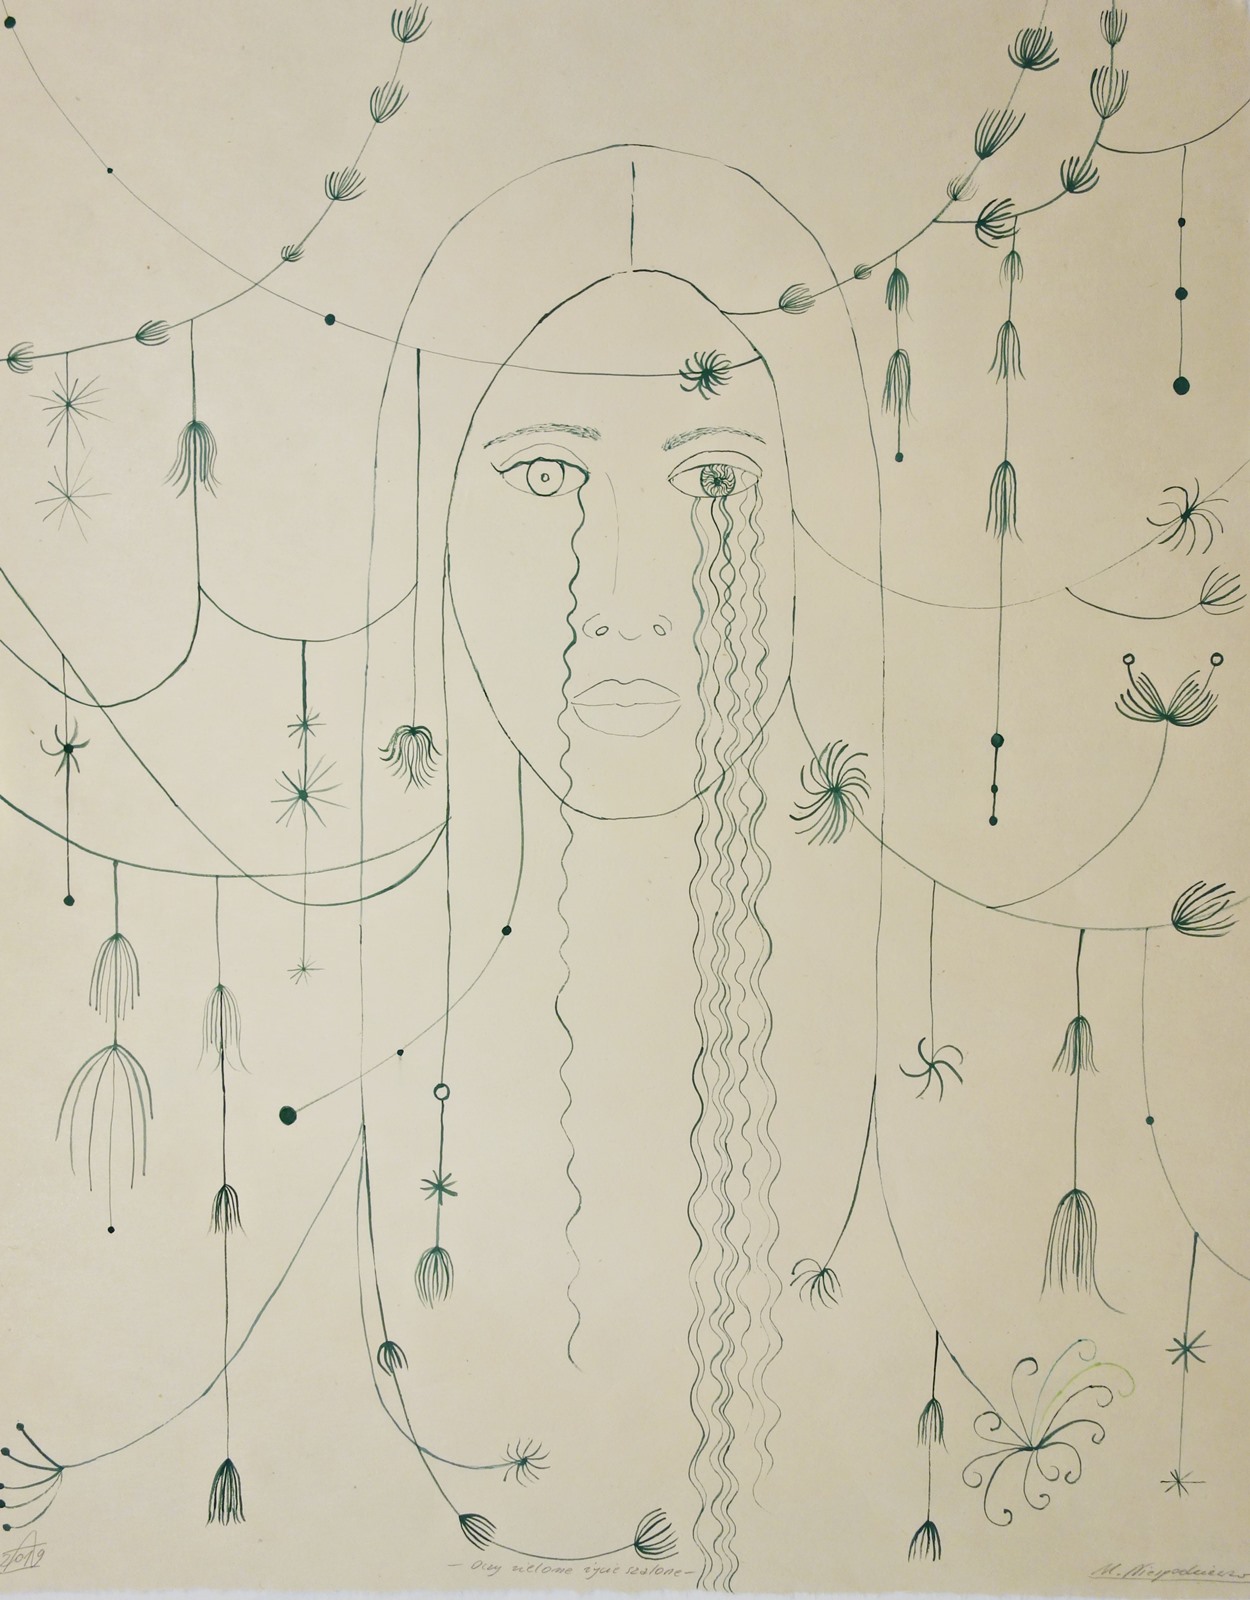 Małgorzata Malwina Niespodziewana, 2019, Oczy zielone, życie szalone, rysunek, 52 × 42 cm (źródło: materiały prasowe)